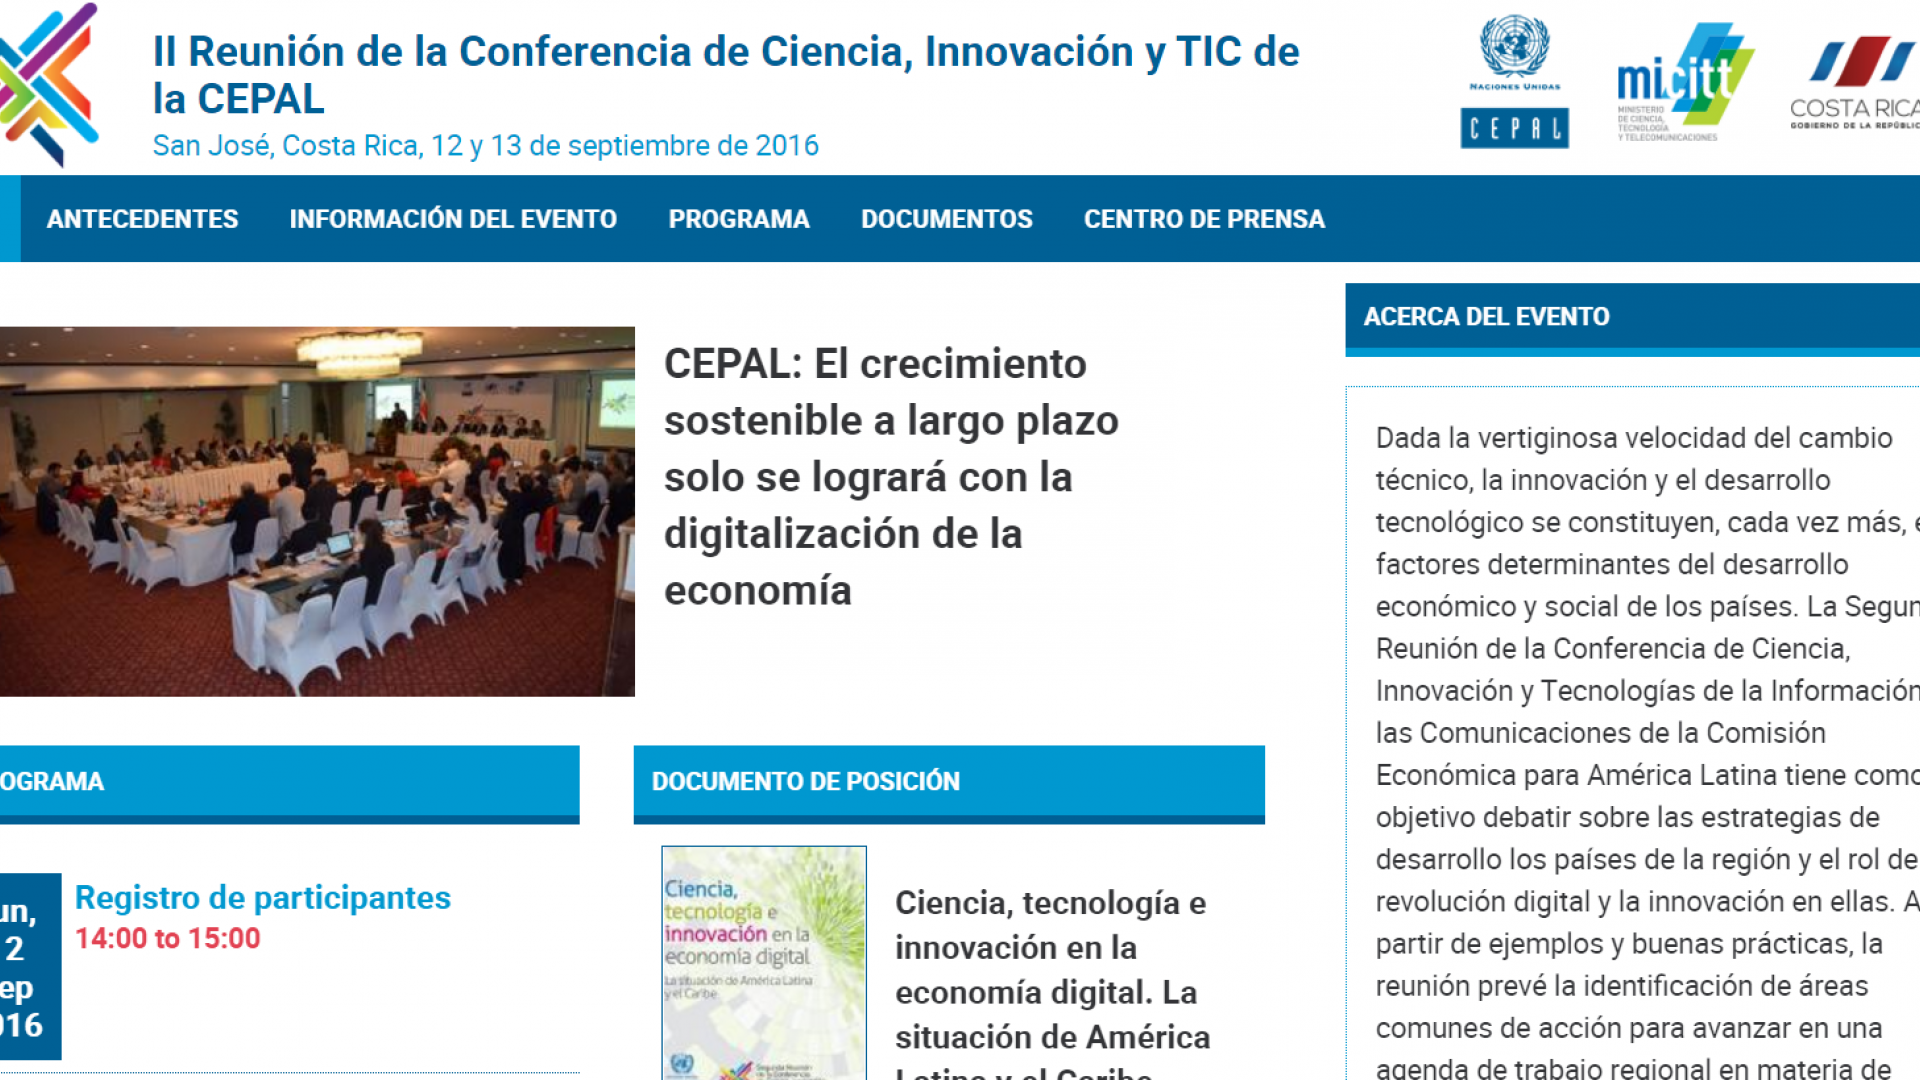 II Reunión de la Conferencia de Ciencia, Innovación y TIC de la CEPAL